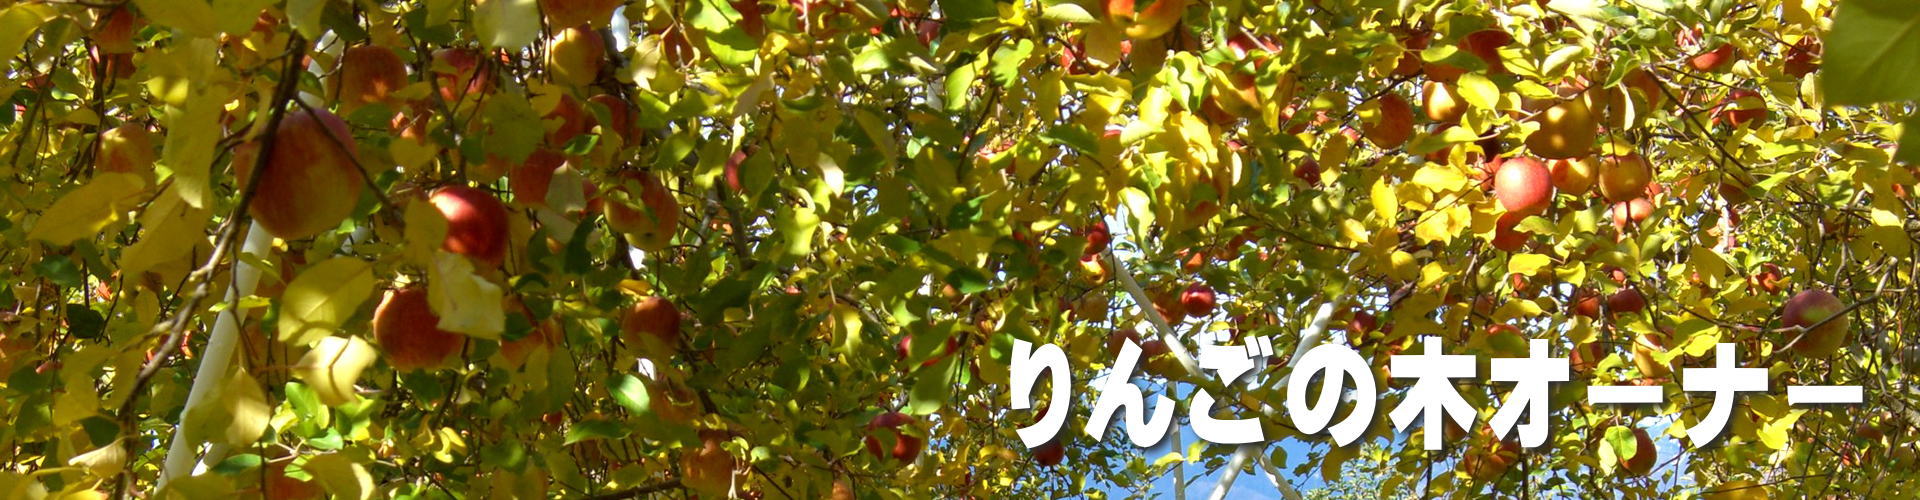 南信州柴本農園葉取らずりんごのりんご狩りのりんごの木オーナー